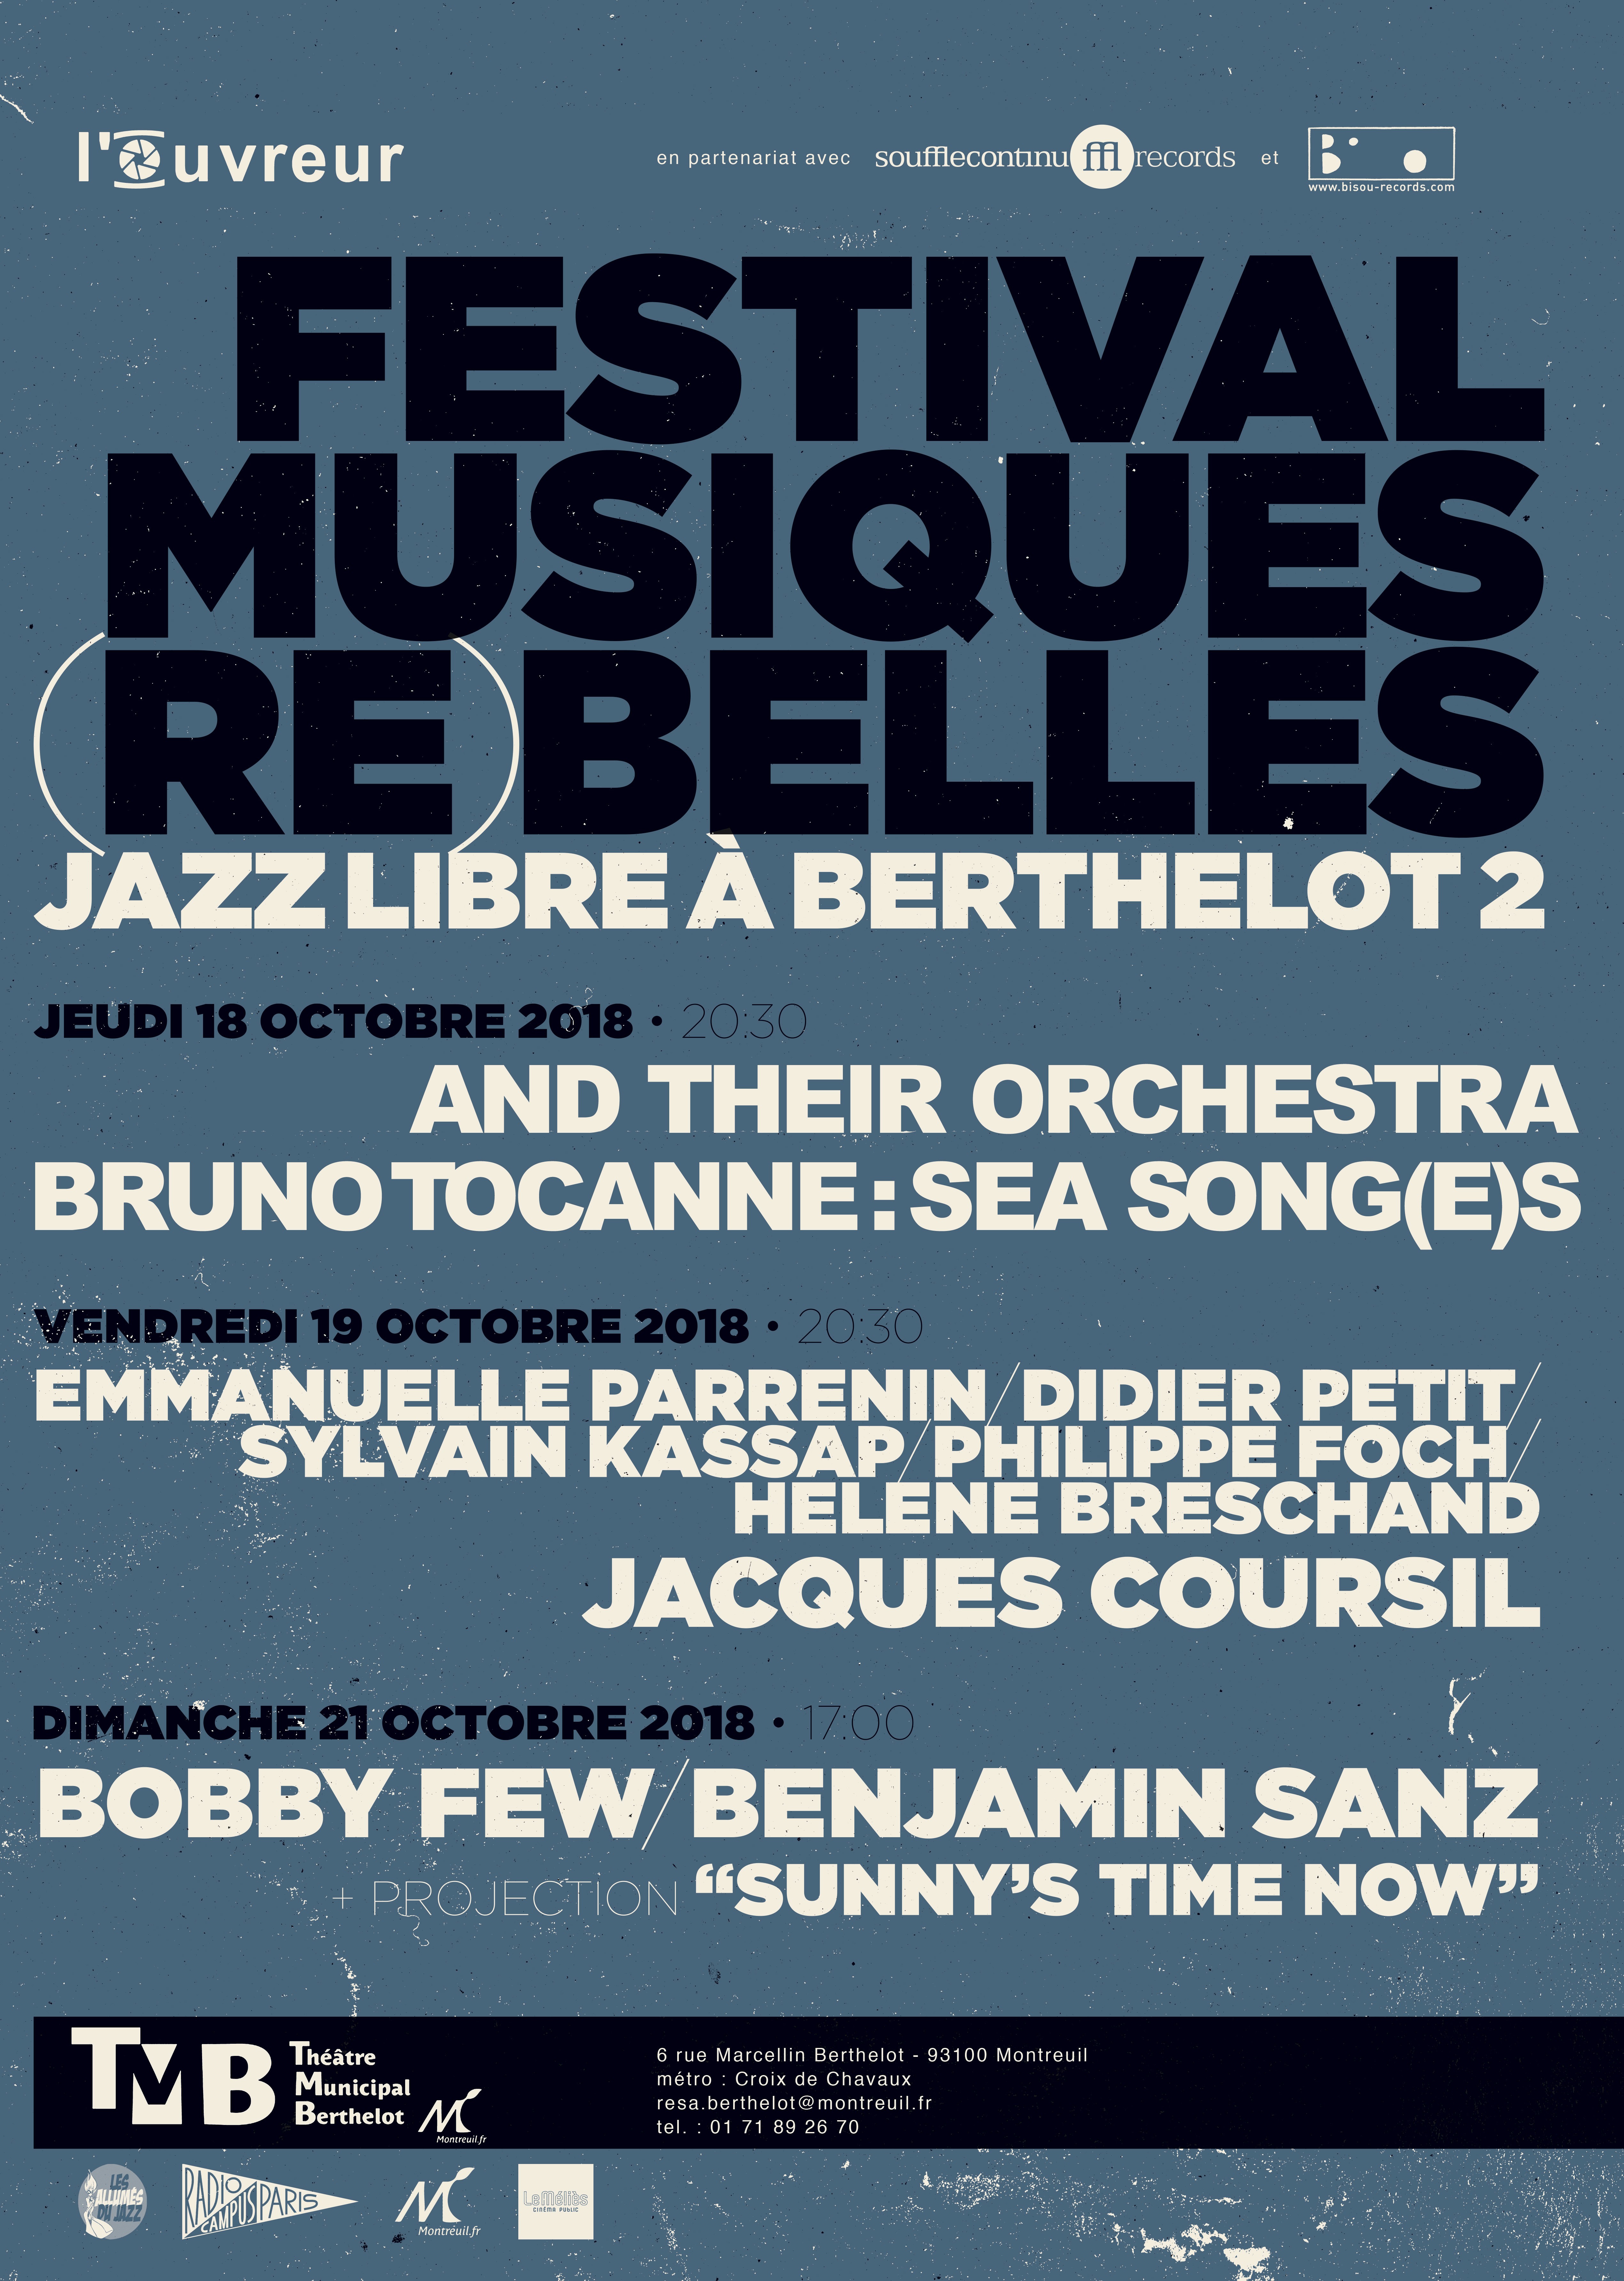 Festival Musiques (Re)belles - Jazz libre à Berthelot - Montreuil